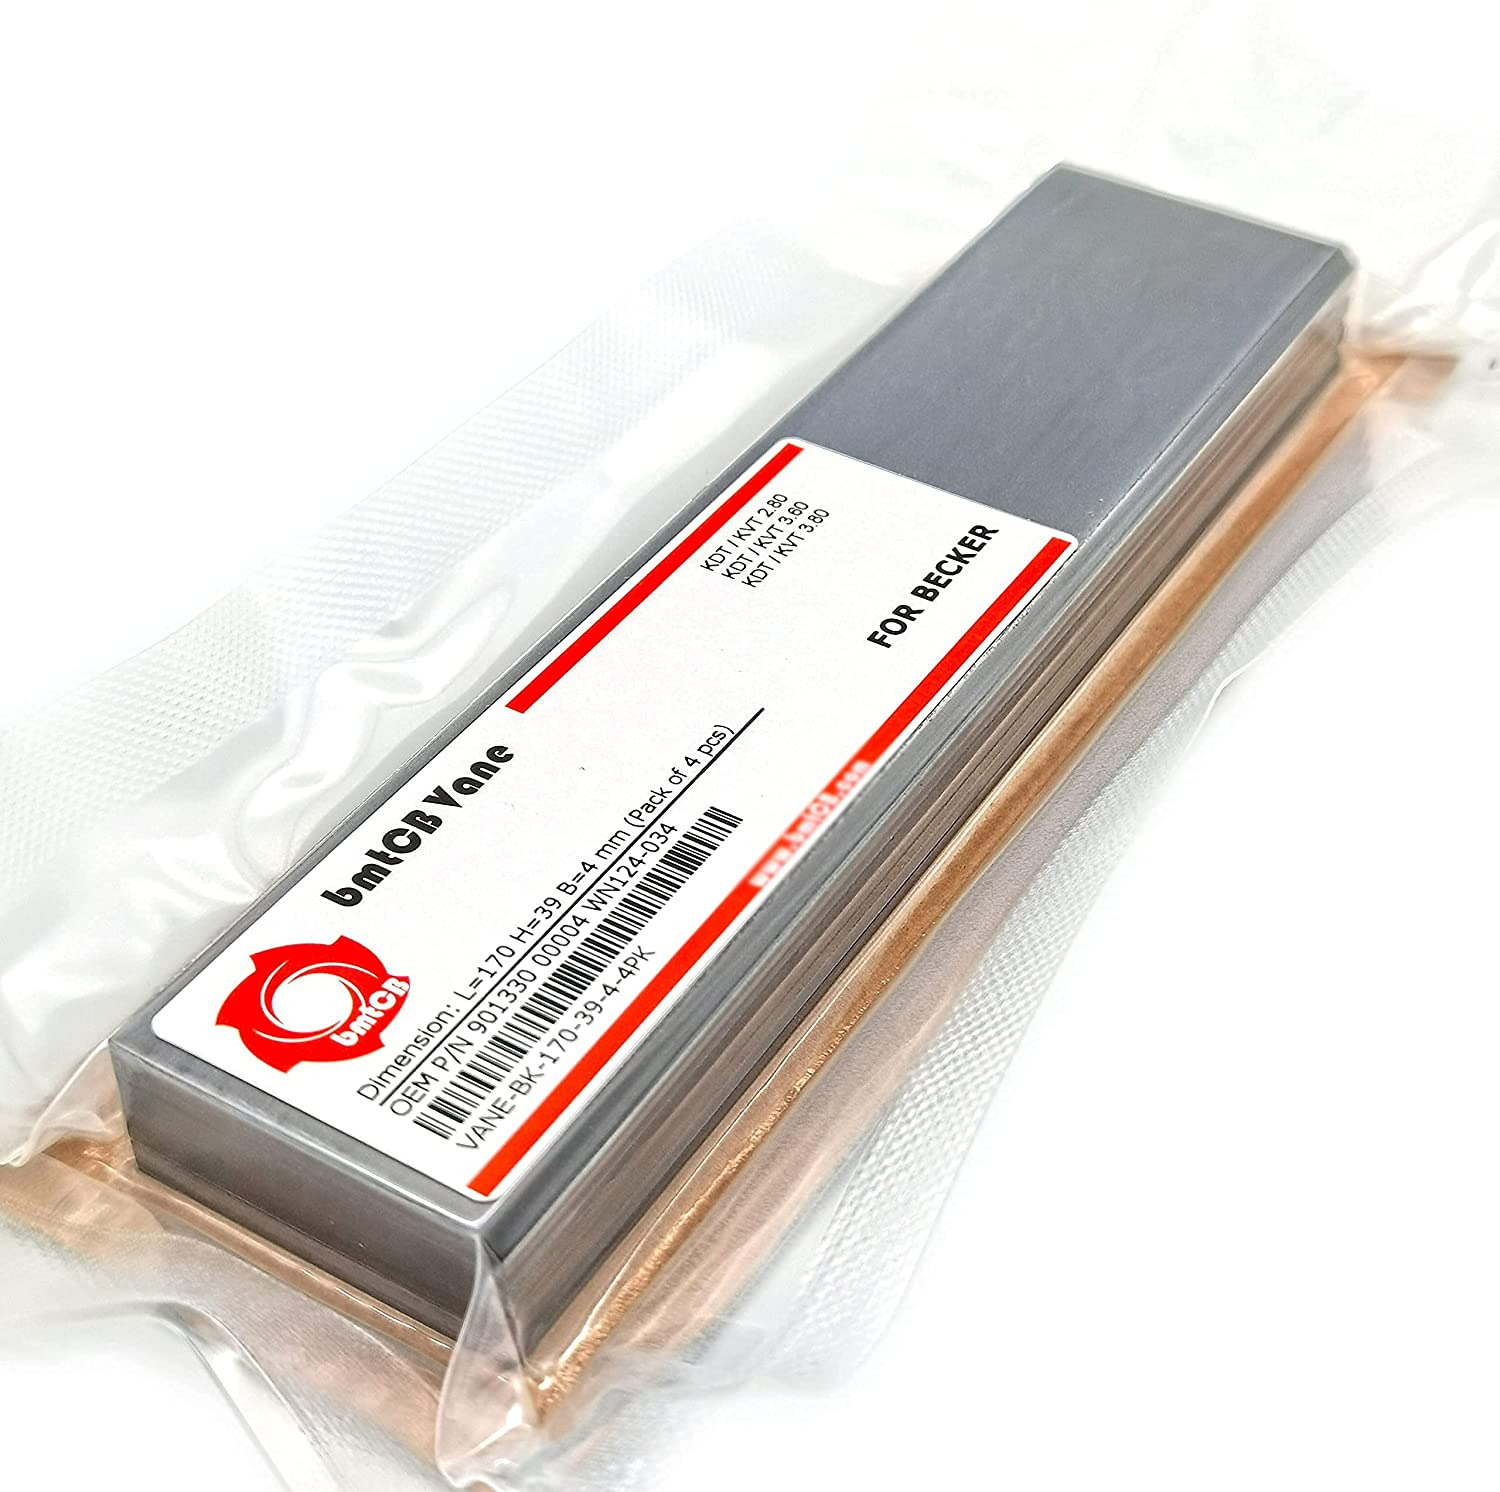 Bmtcb Carbon Vane 4Pcs PM Kit for Becker Pump Picchio2200 KDT2.80 KDT3.60 KDT3.8